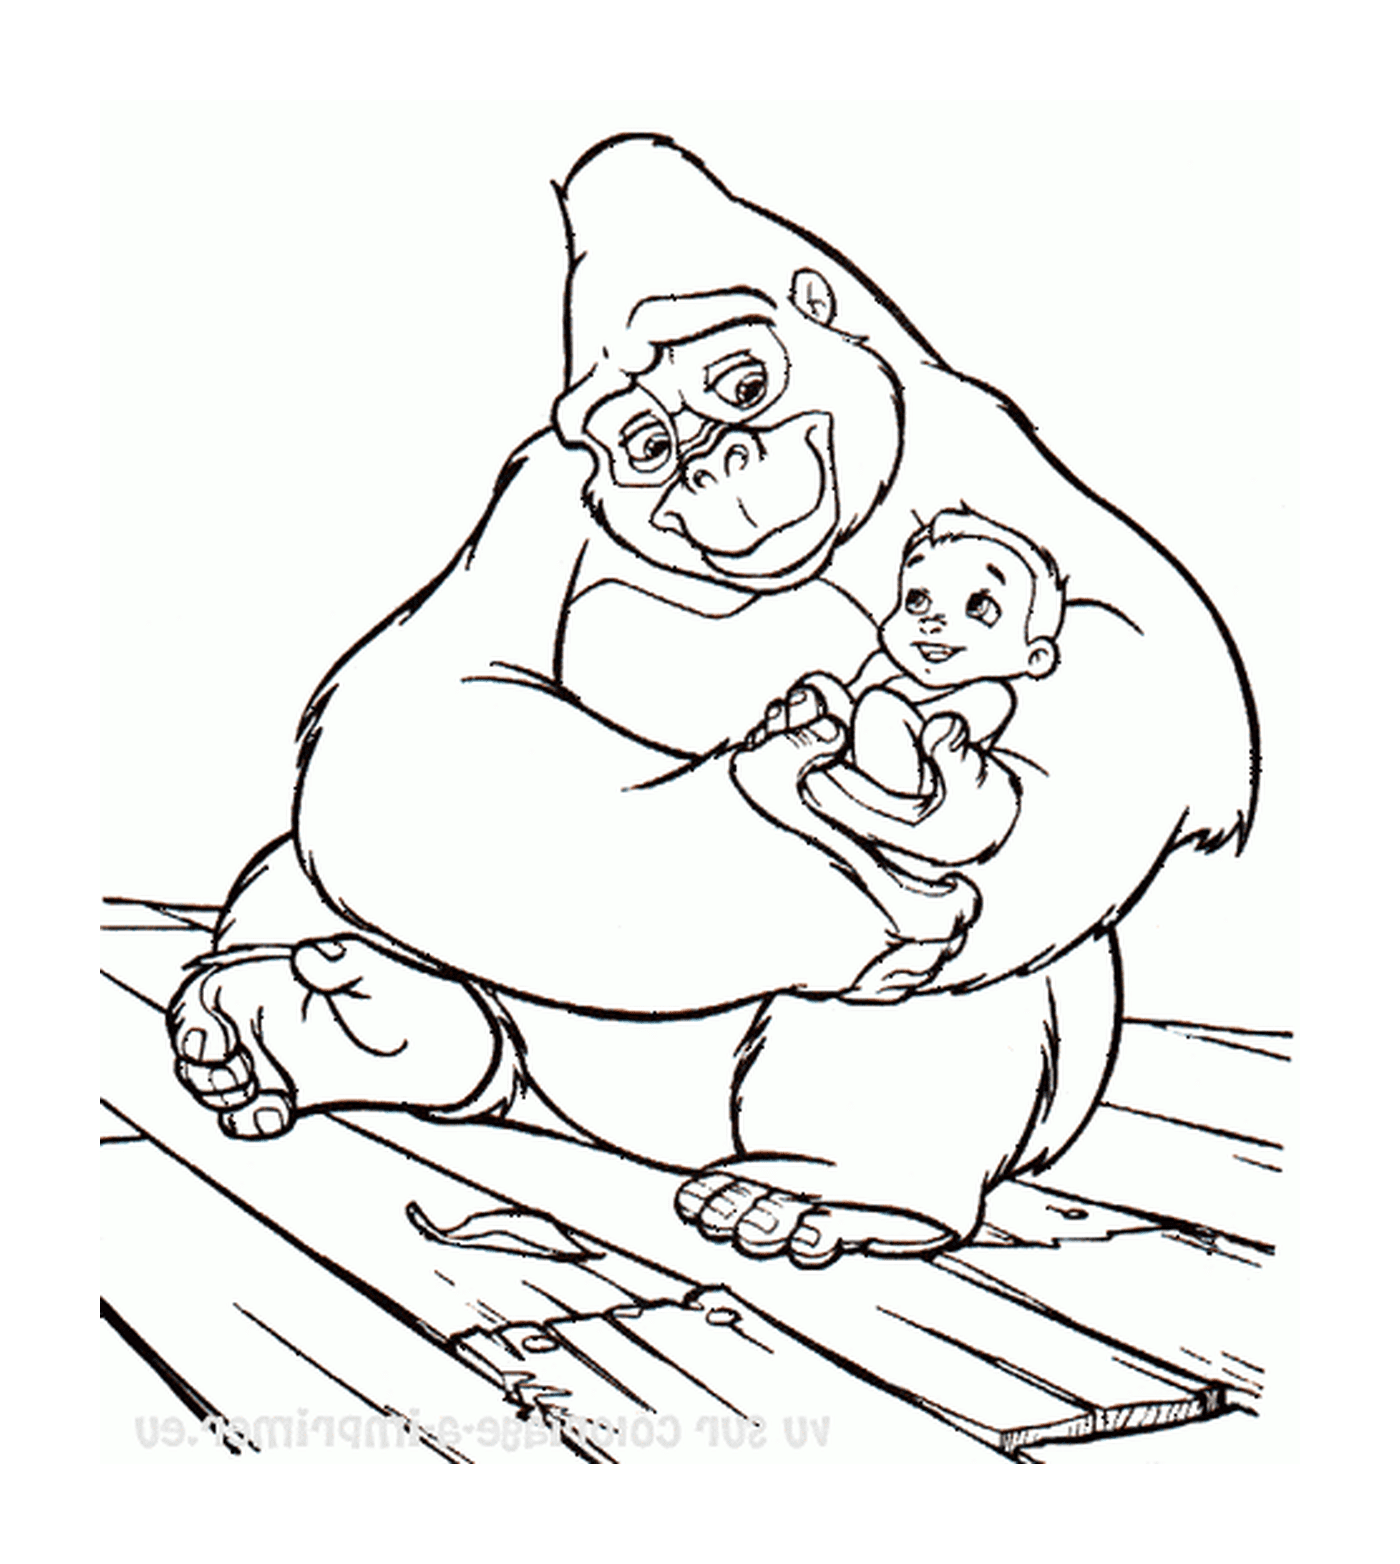  Gorila adulta segurando um bebê em seus braços 